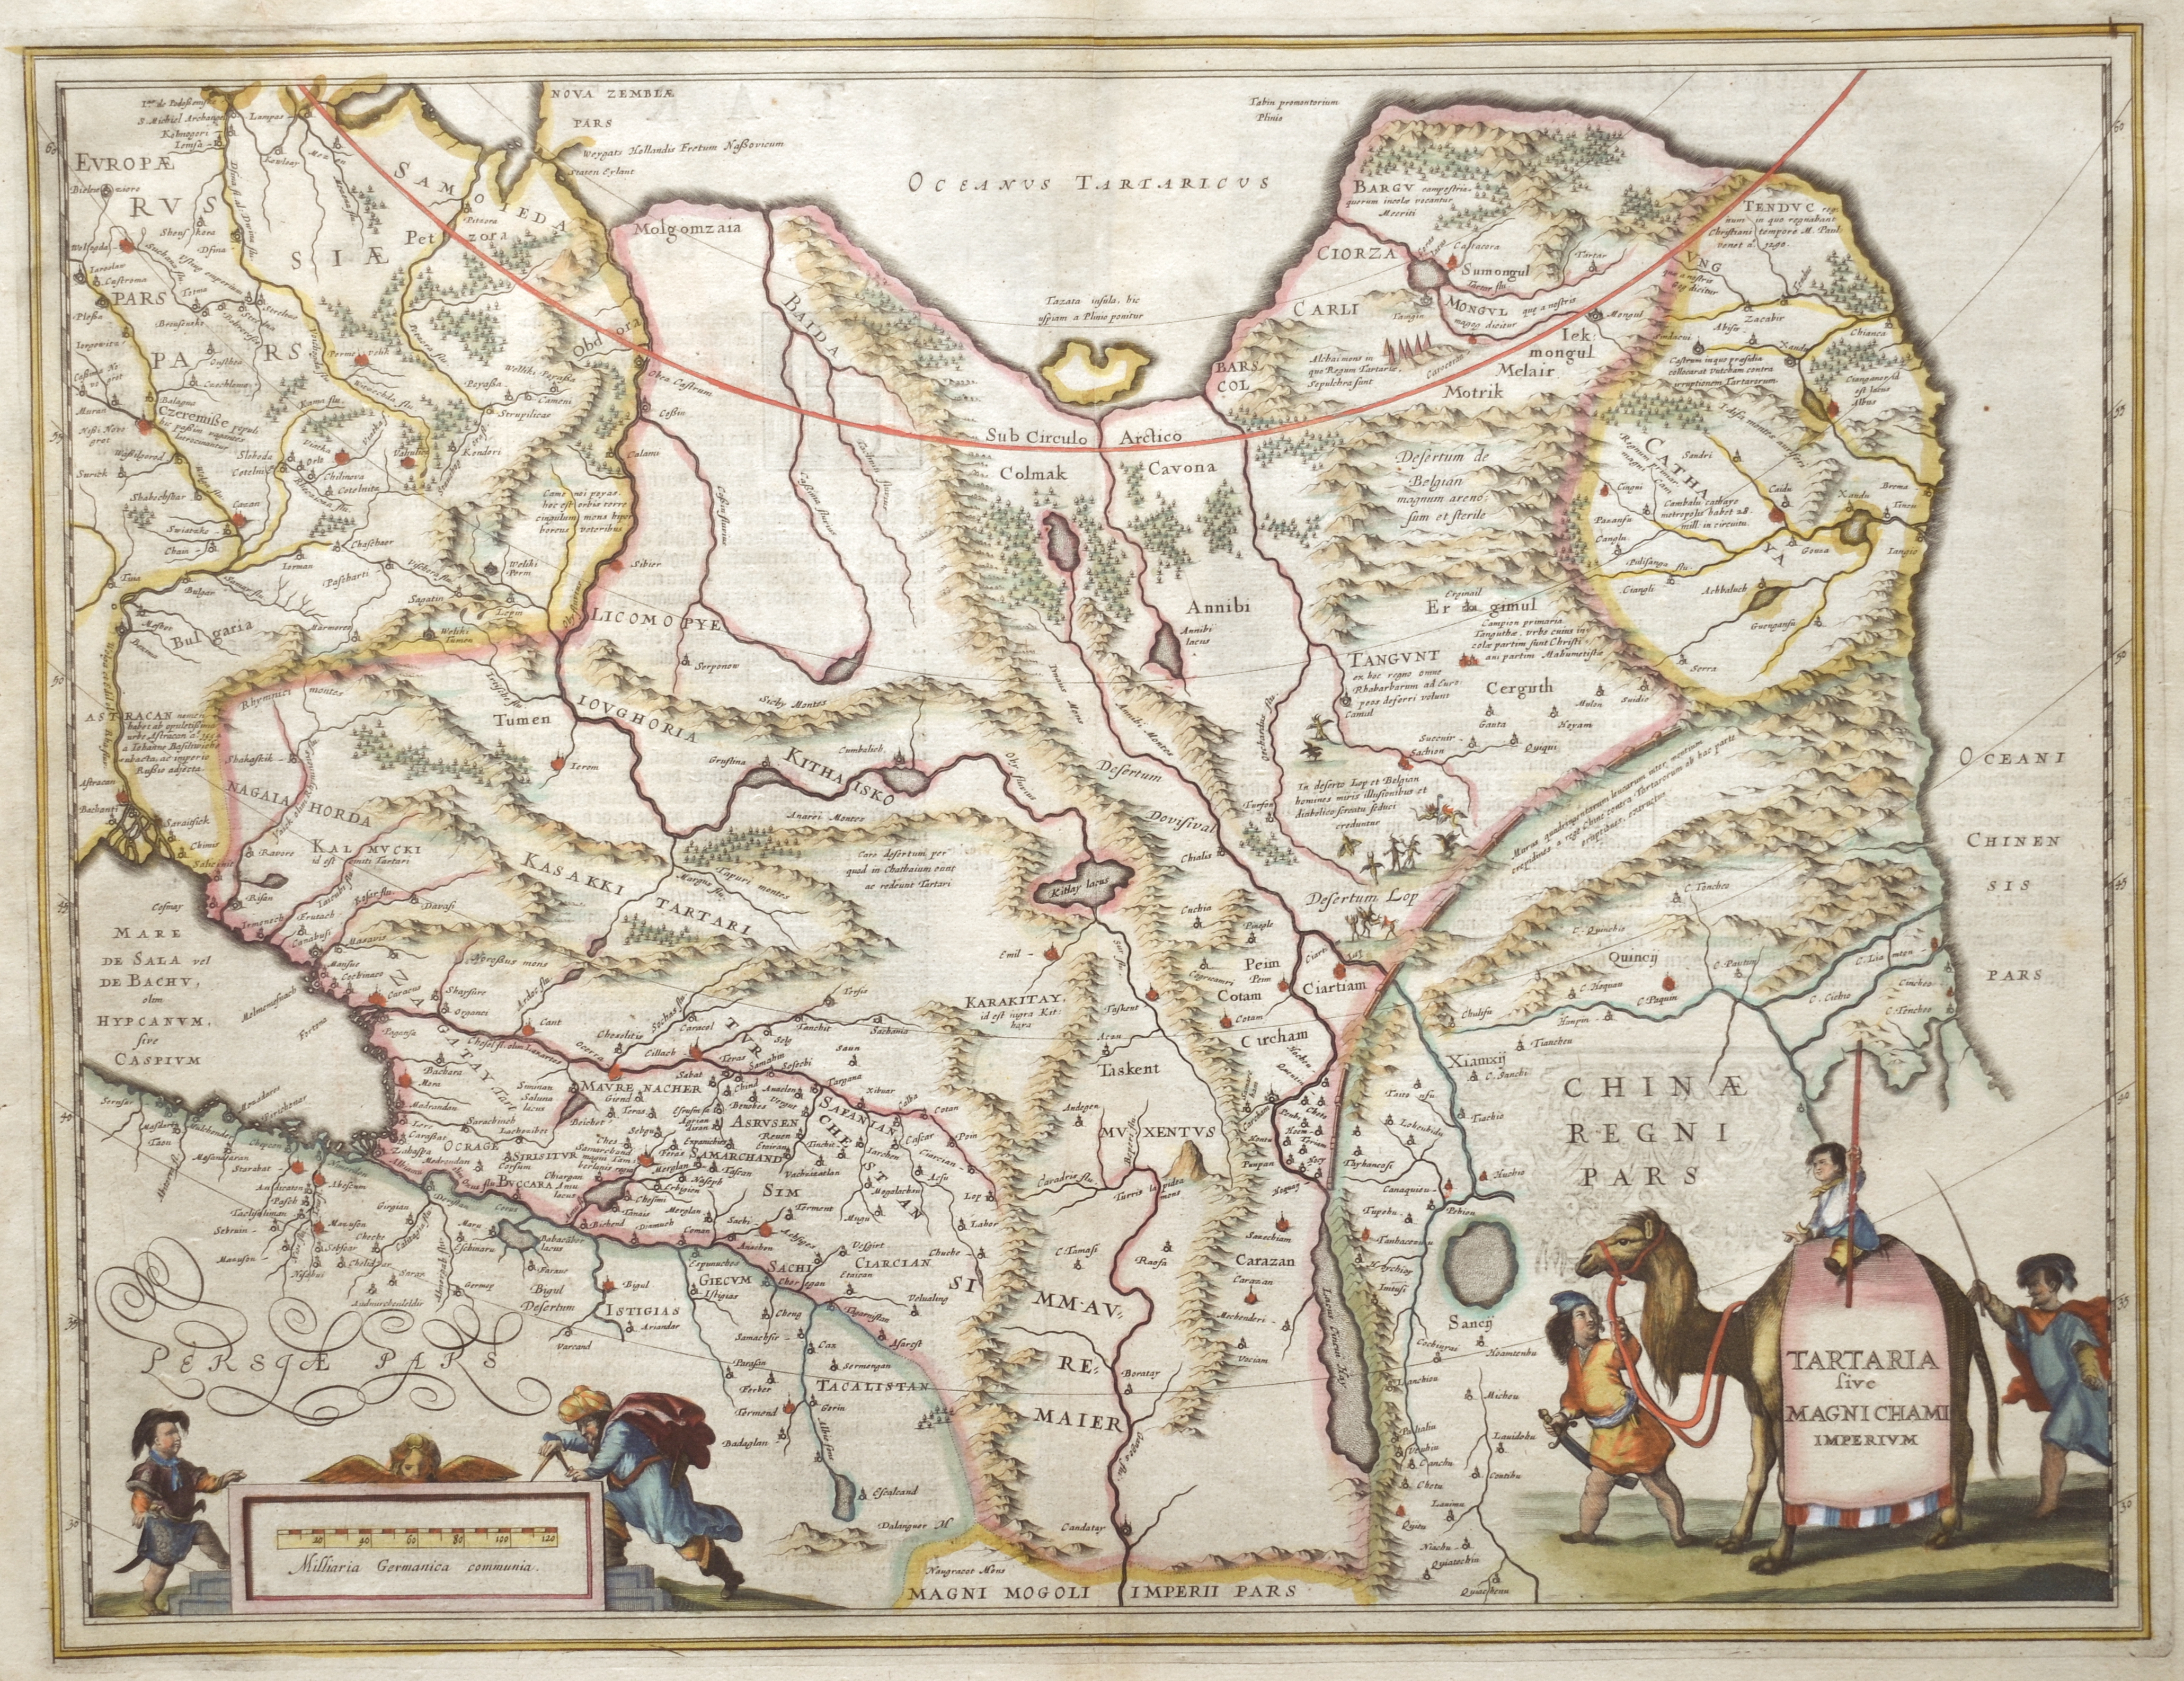 Janssonius/Mercator-Hondius, H. Johann Tartaria sive Magnichami Imperium.